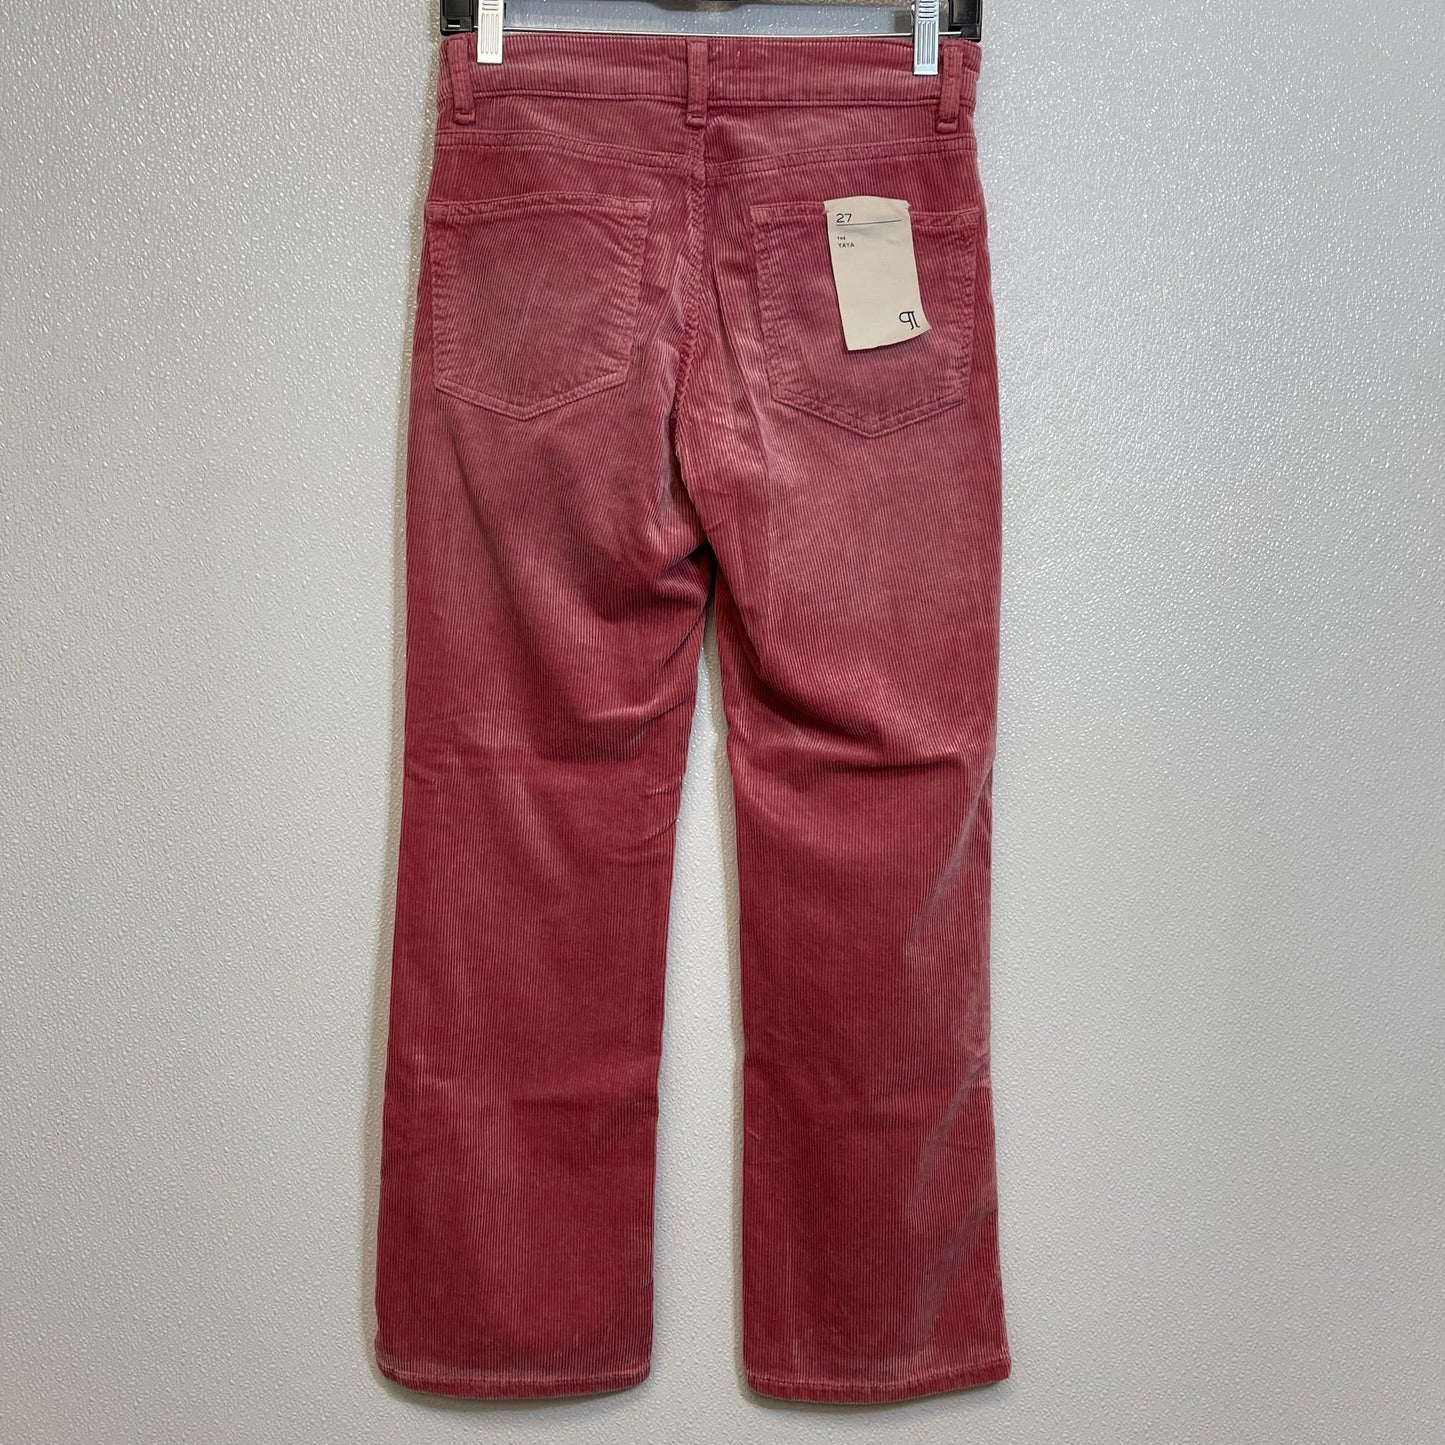 Mauve Pants Cropped Pilcro, Size 4